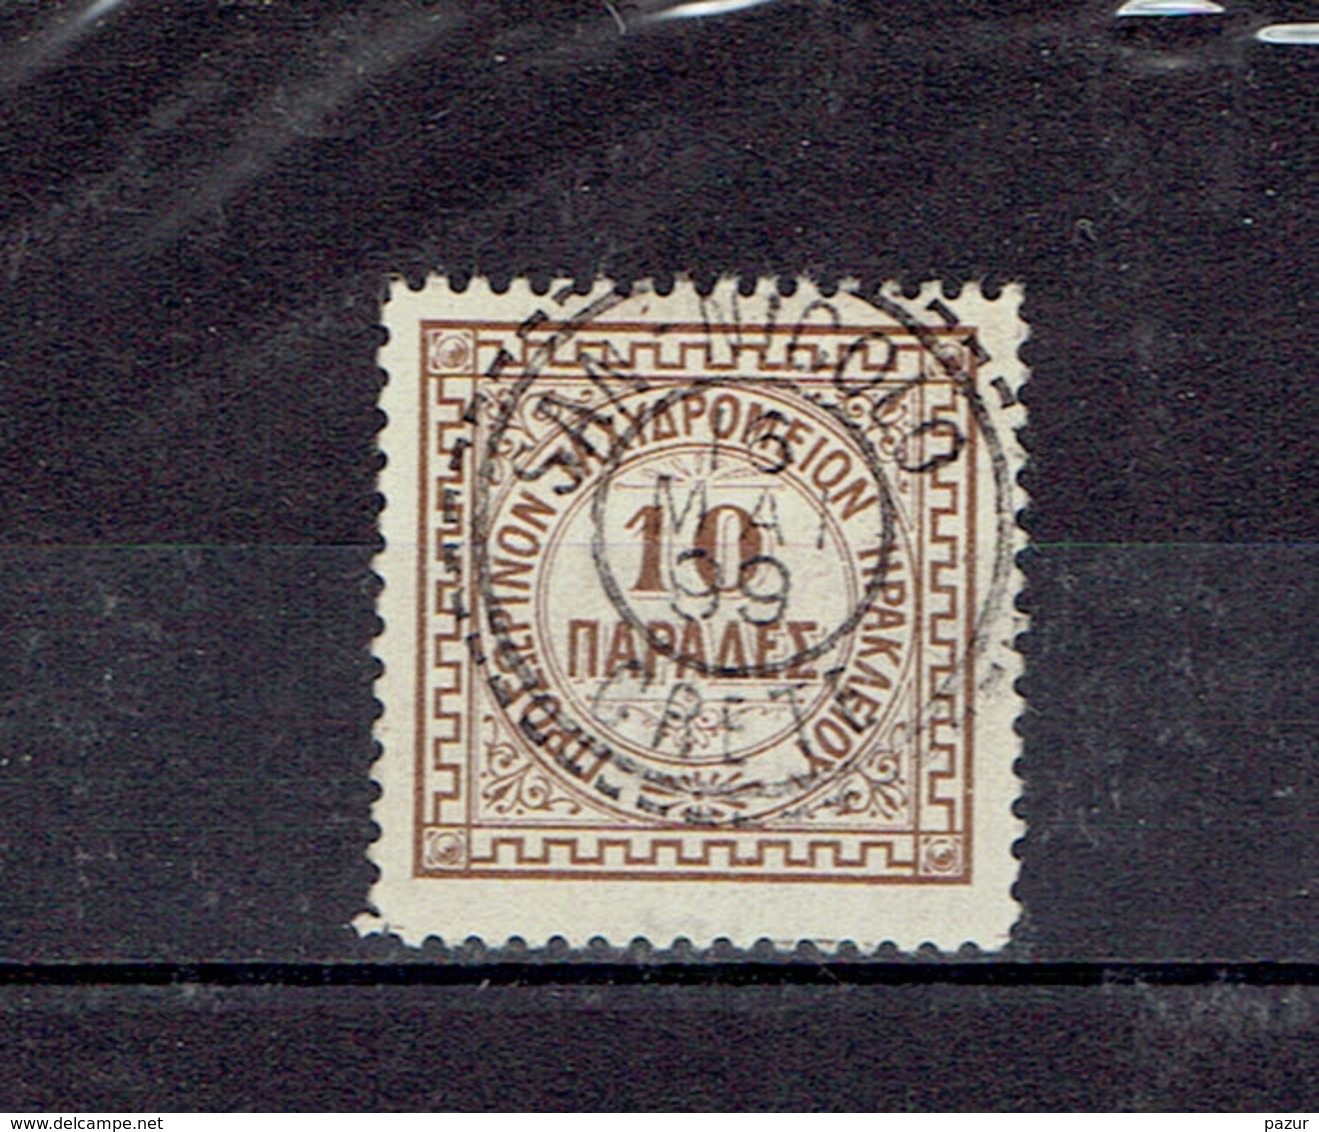 CRETE - BUREAU FRANCAIS A L'ETRANGER - MARCOPHILIE - TP N°3 - OB - SAN NICOLO 16 MAI 1899 - CLAIR - RARE - Used Stamps